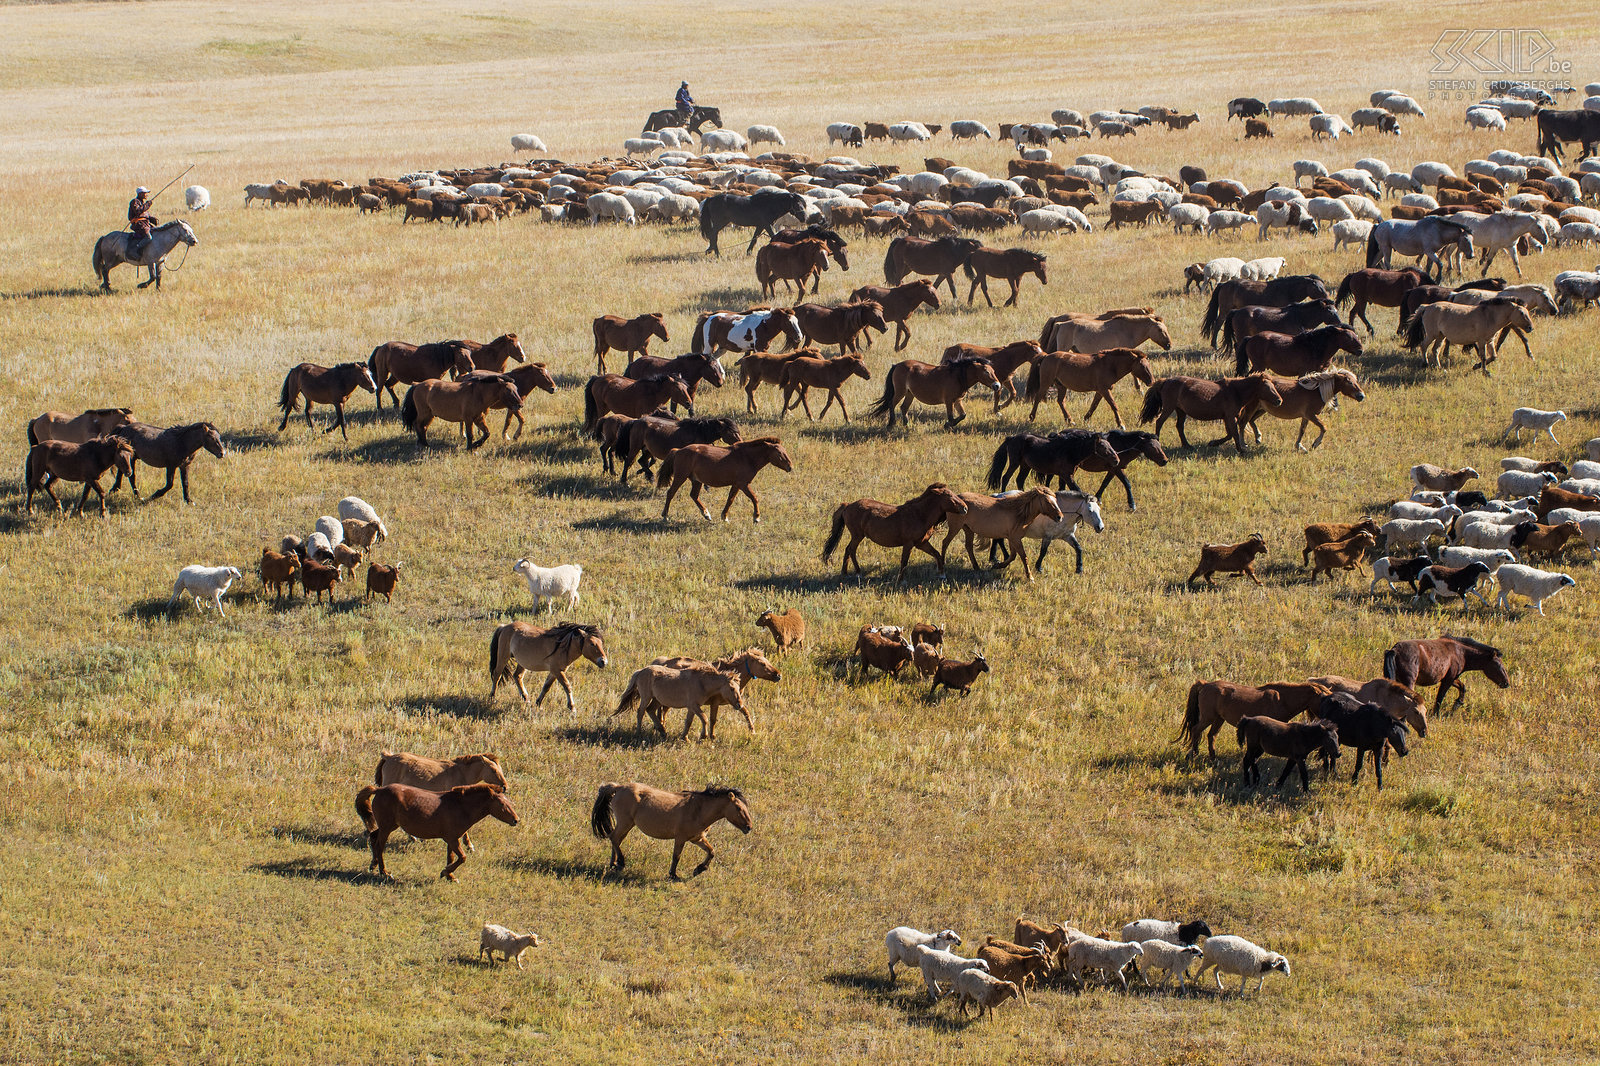 Hustai - Nomaden met kuddes We ontmoetten ook enkele Mongoolse nomaden die hun grote kuddes van paarden, koeien en schapen aan het verplaatsen waren naar het winter kamp. Na de zomer breken ze hun gers (traditionele Mongoolse tenten) op en verhuizen alle dieren naar een andere plaats waar ze de lange koude winter kunnen doorbrengen. Stefan Cruysberghs